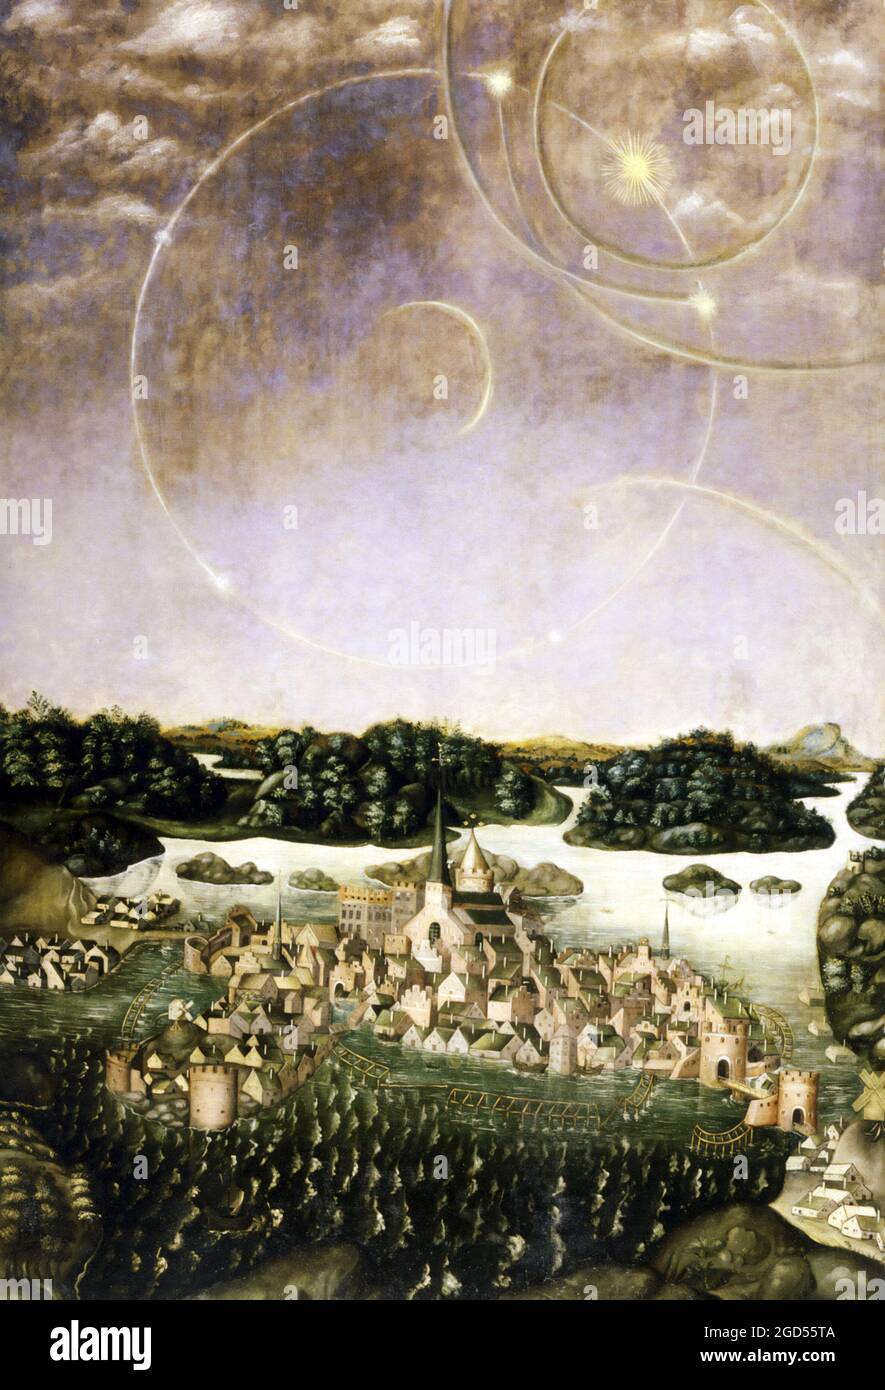 Vädersolstavlan est une peinture à l'huile sur panneau représentant un halo, phénomène optique atmosphérique, observé à Stockholm le 20 avril 1535. Banque D'Images